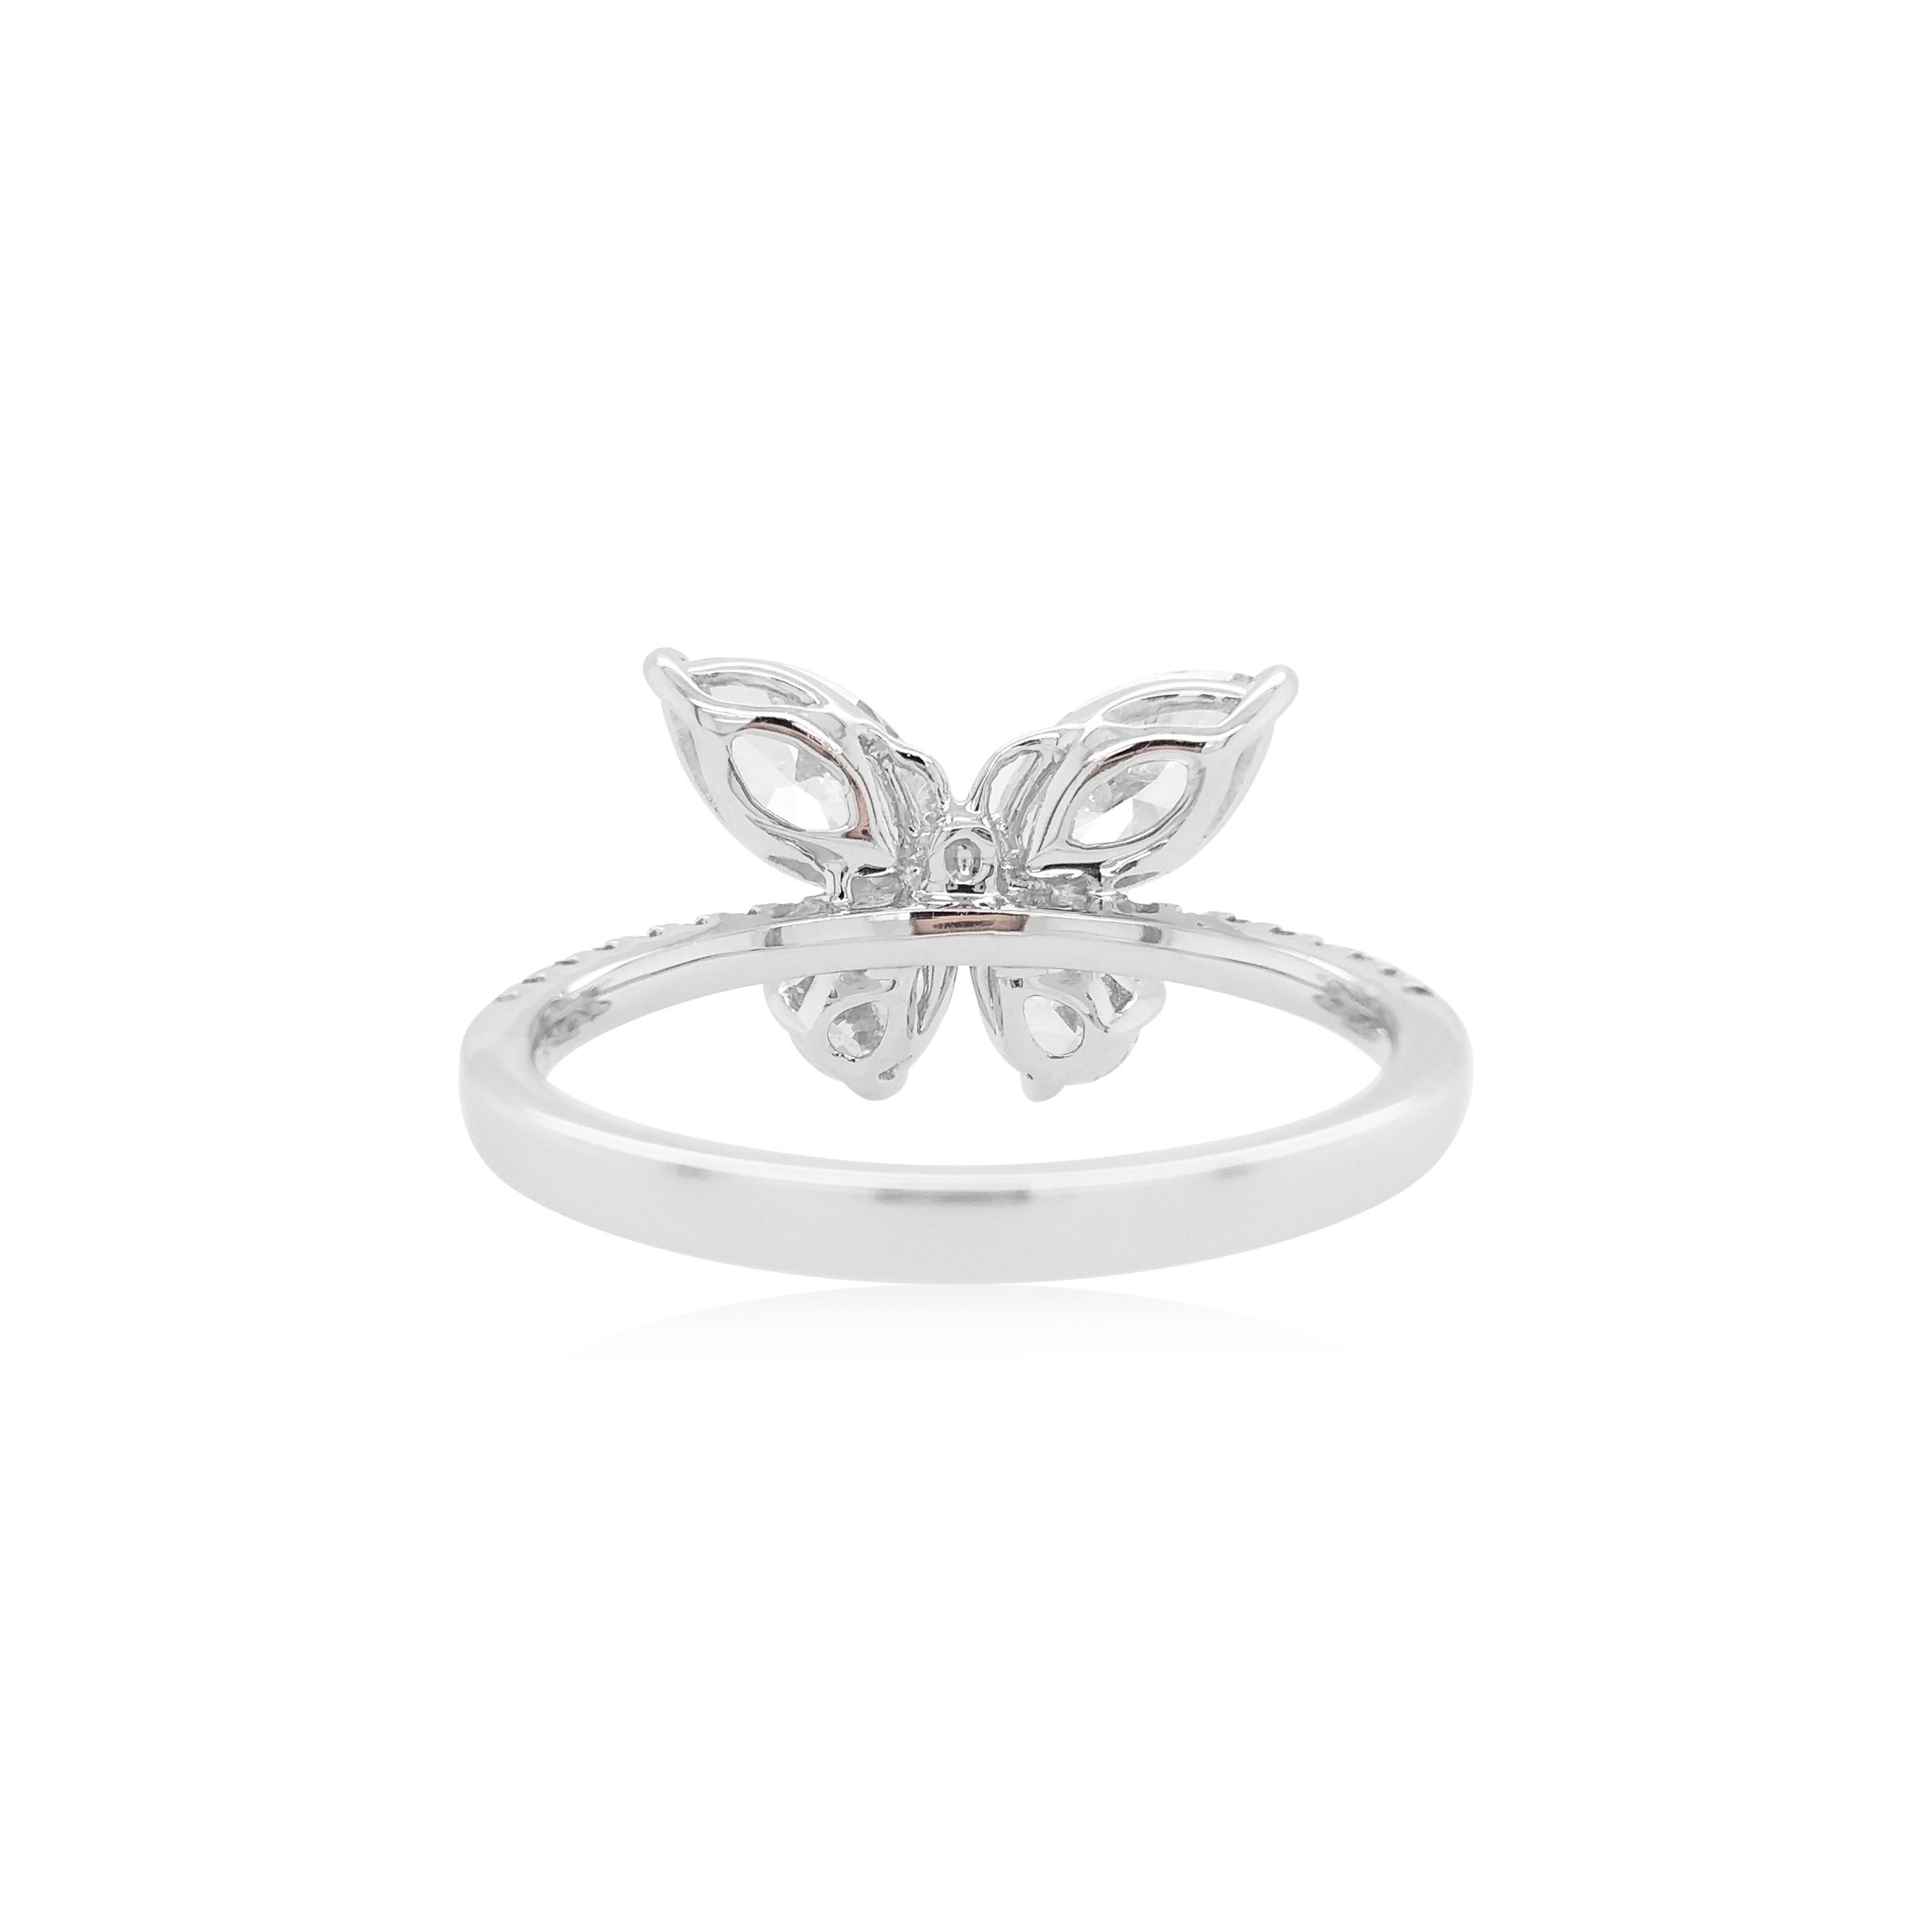 Cette bague unique en platine au motif papillon présente des diamants blancs scintillants de forme marquise et poire au cœur du design. Unique et saisissante, cette bague exceptionnelle ajoutera une touche de grand glamour à tous les